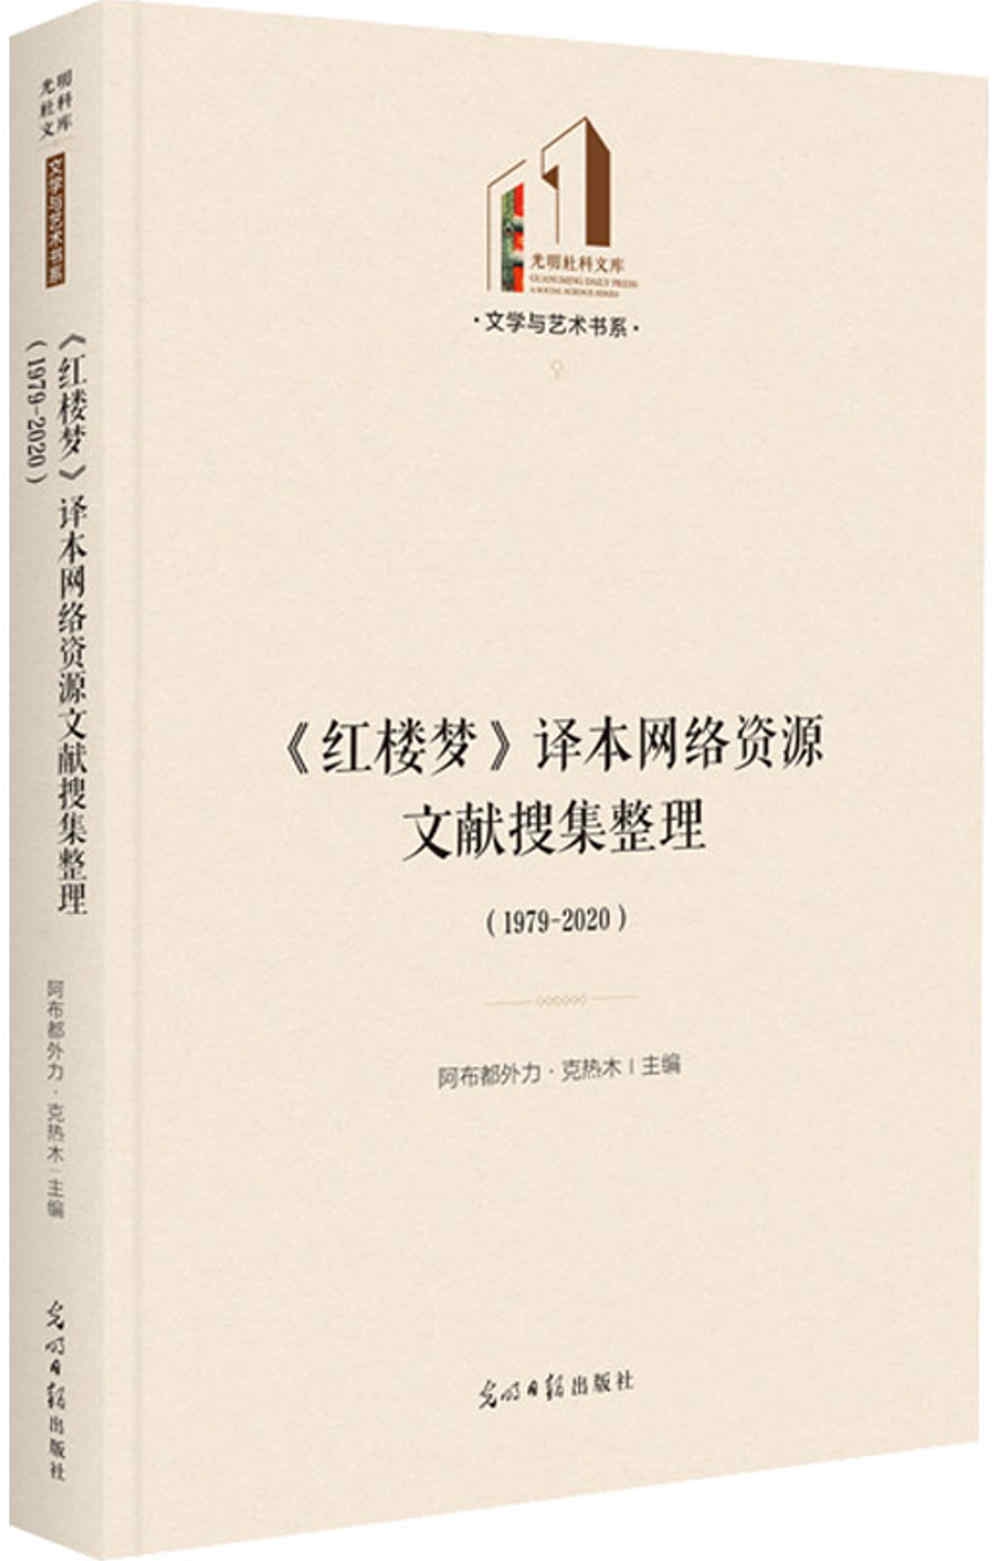 《紅樓夢》譯本網絡資源文獻搜集整理(1979-2020)